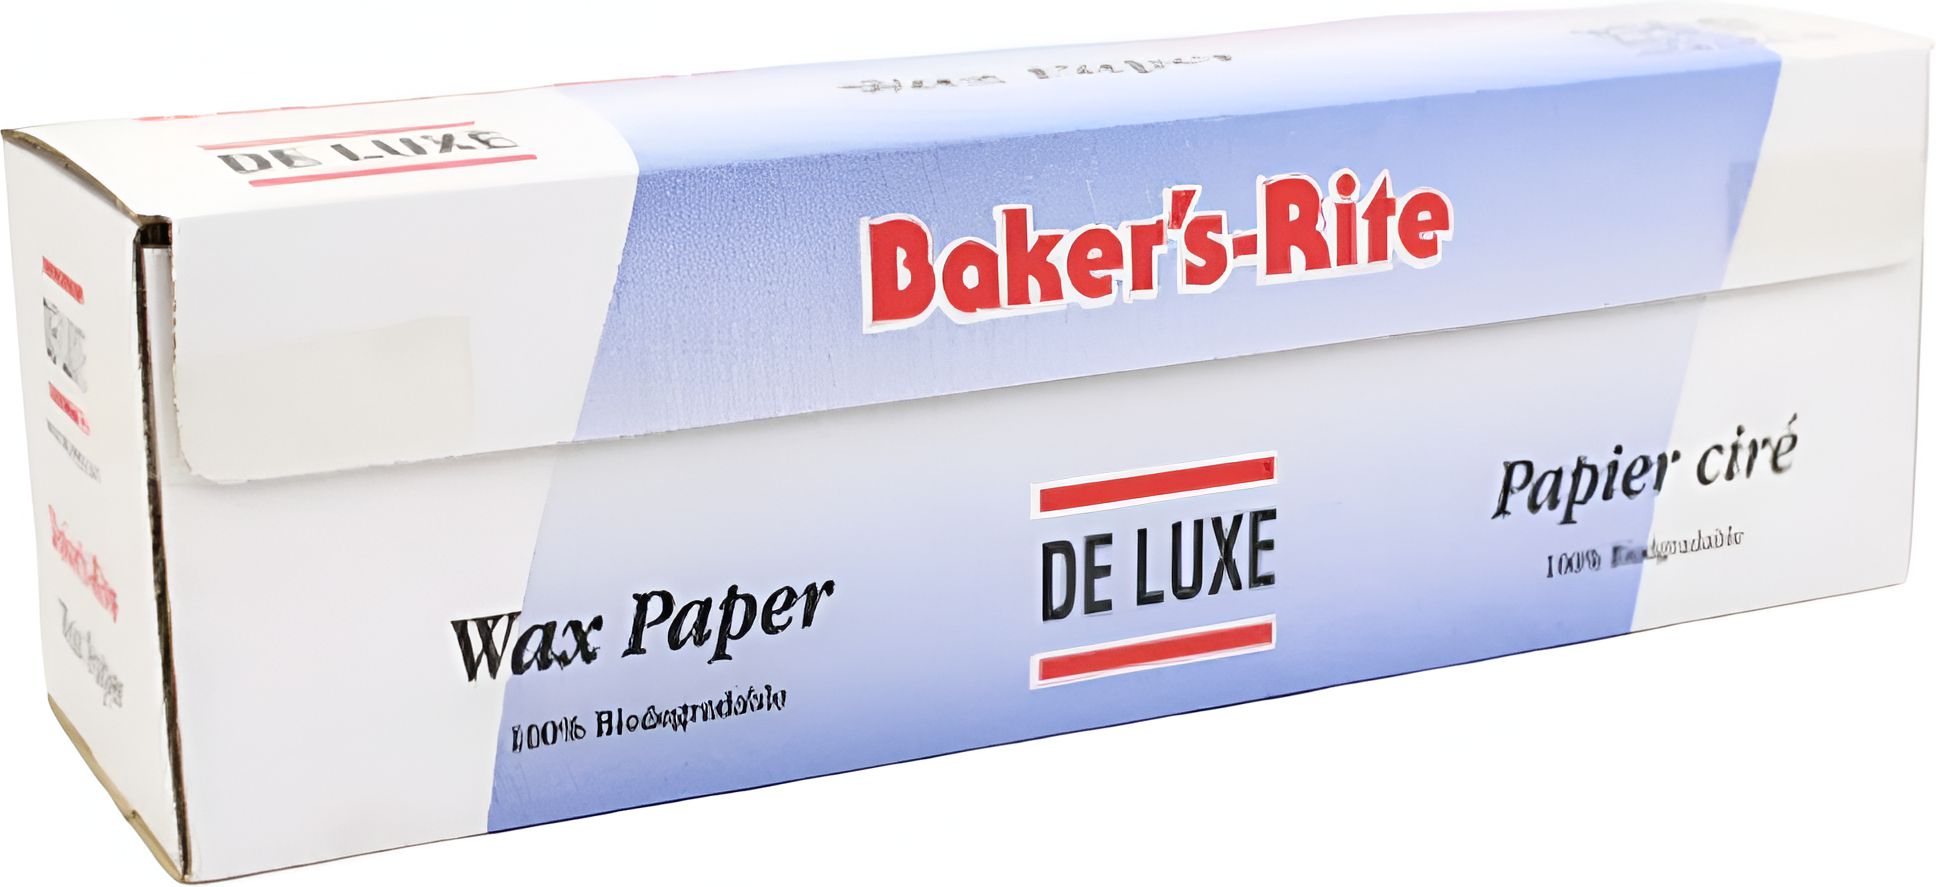 De Luxe - 12" x 375 Feet Bakers Rite Waxed Paper Roll With Cutter, 6rl/cs - 160375